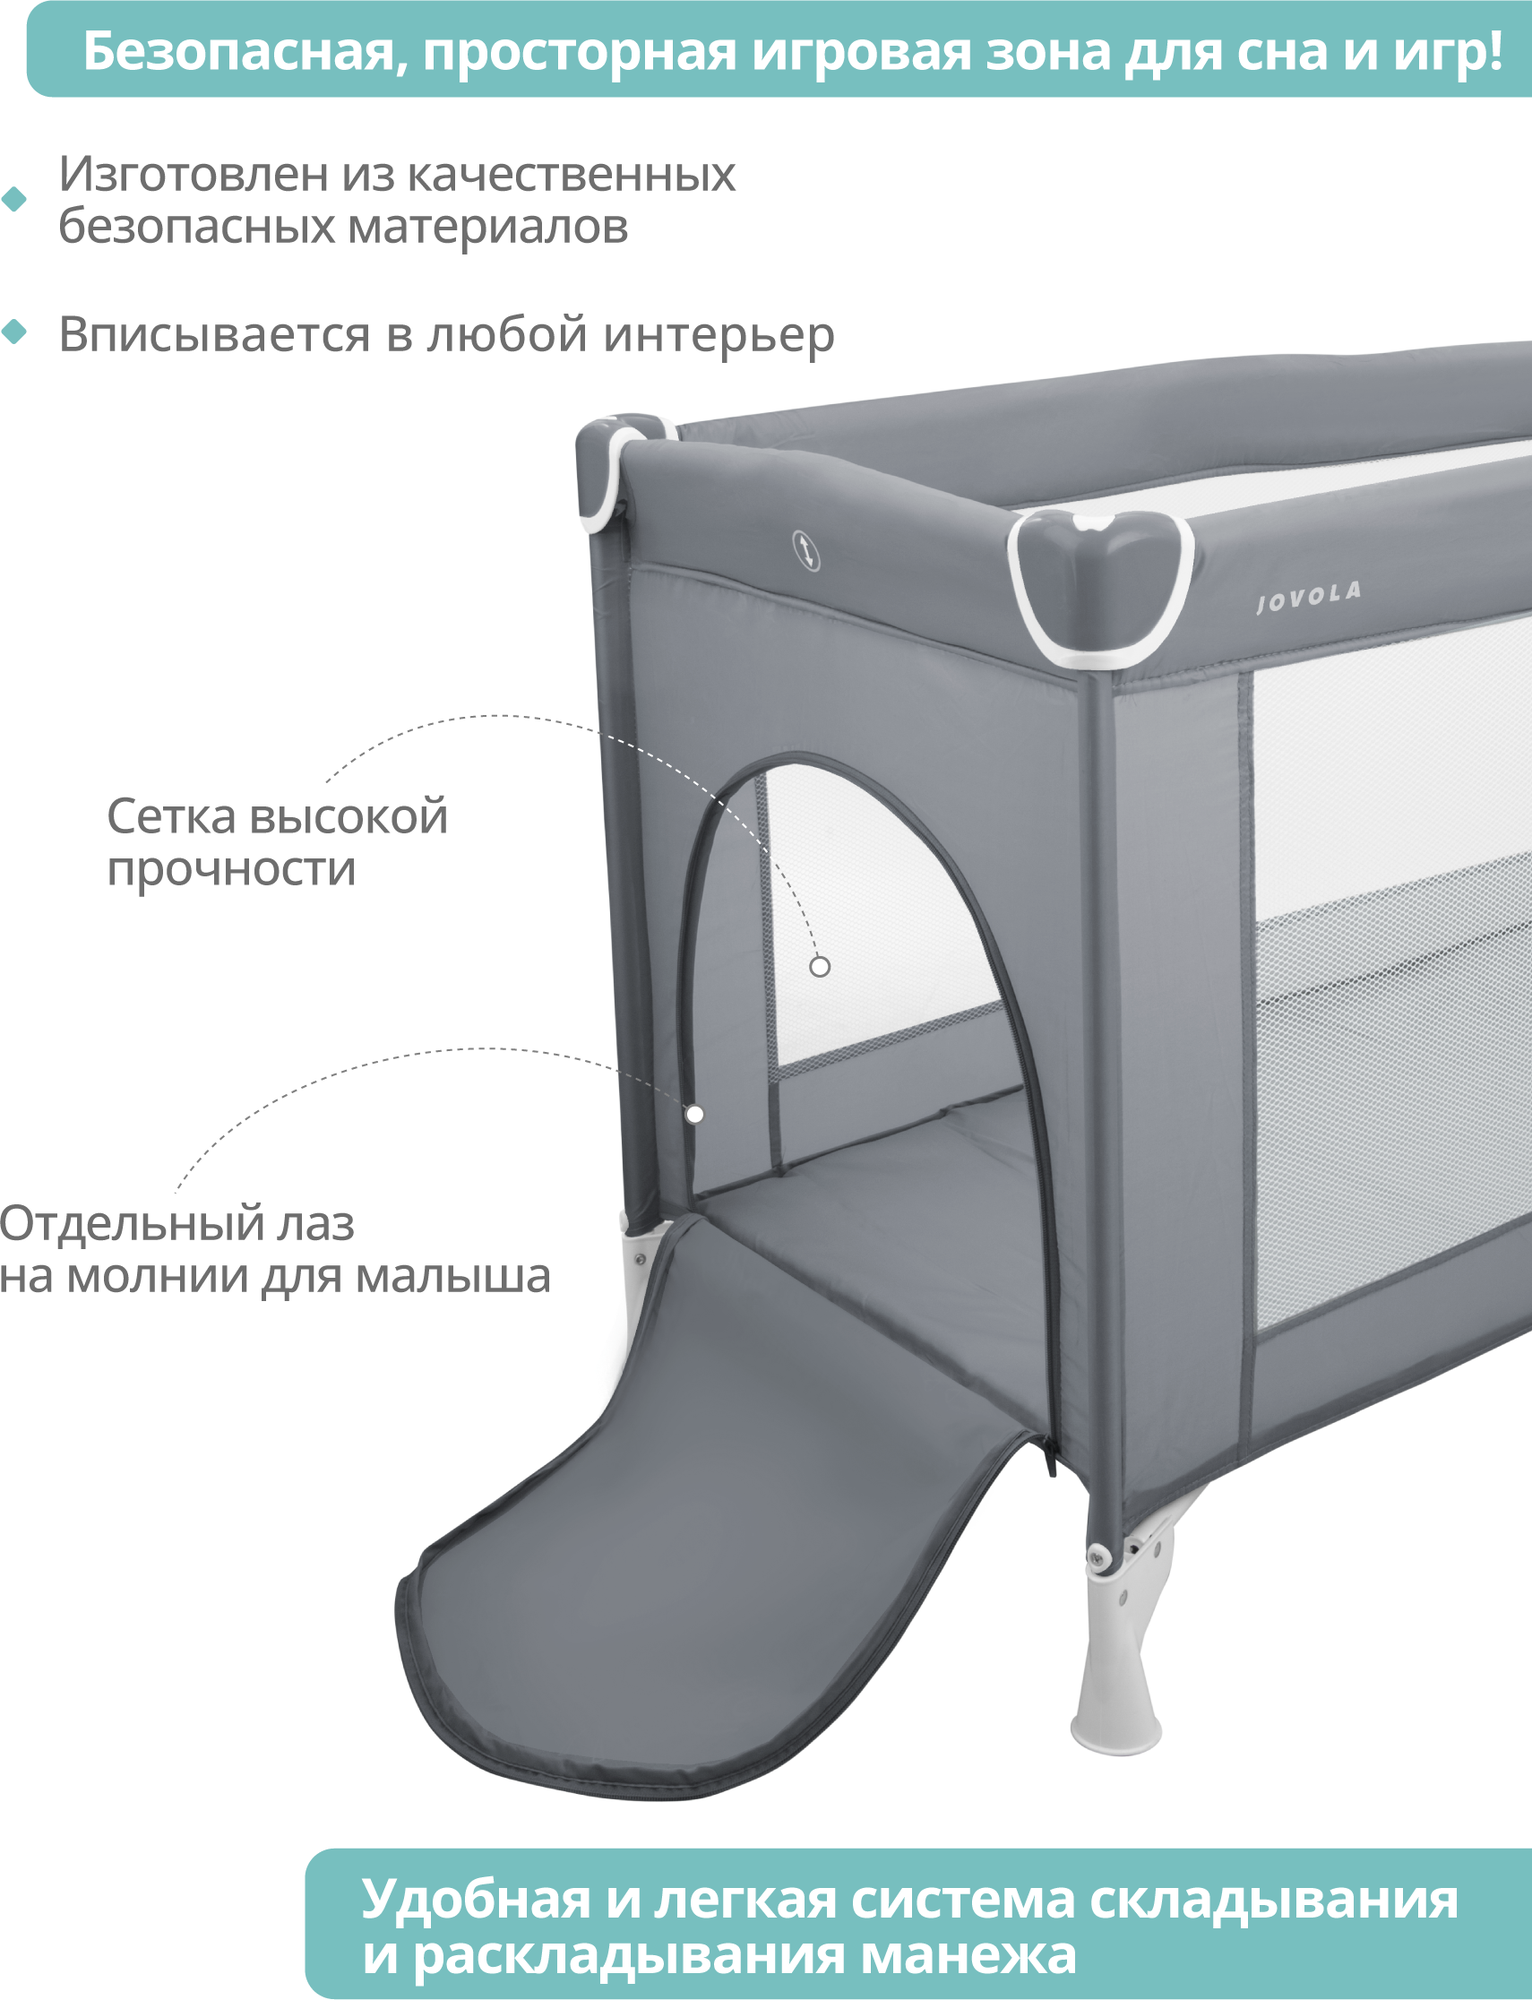 Манеж-кровать JOVOLA AMICO, 0-36 мес, складной, с аксессуарами, 2 уровня, серый